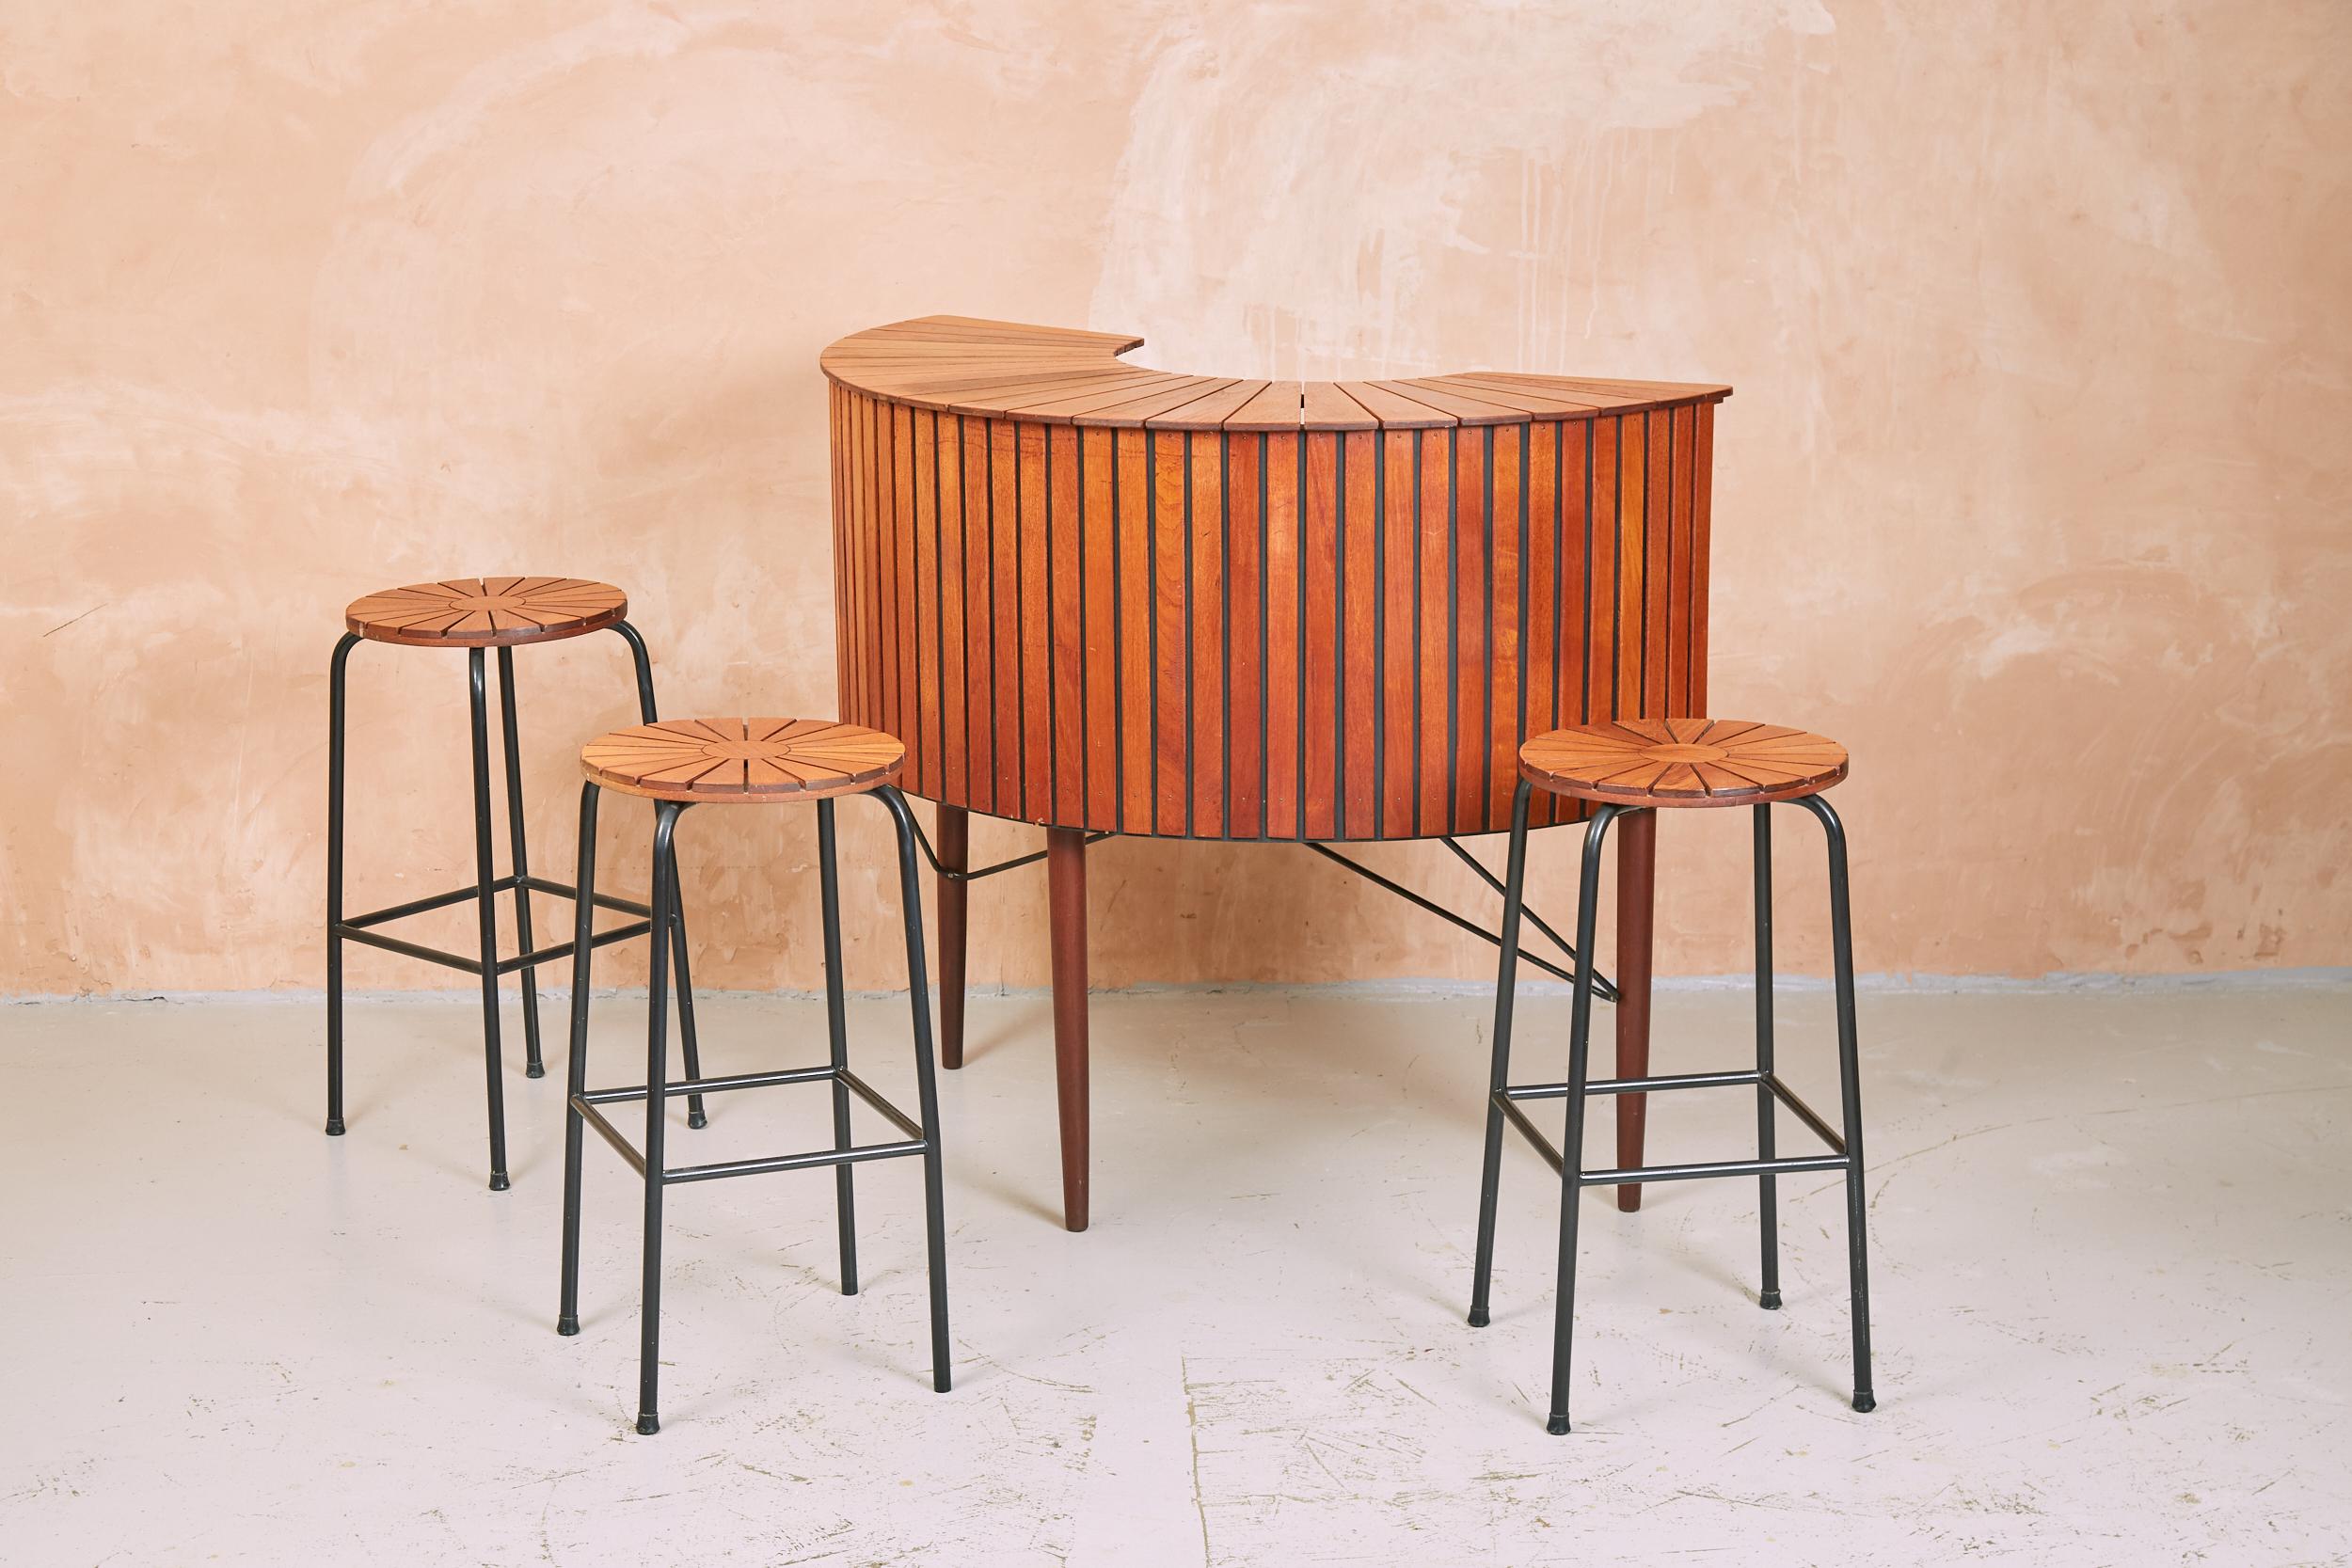 Eine seltene und stilvolle Hausbar aus den 1960er Jahren von Sika Møbler, hergestellt in Dänemark.
Mit einer massiven Bar aus Teakholz mit Lattenrost und passenden Hockern mit Sonnenschliffmuster ist dieses Set ein echter Klassiker.
Die